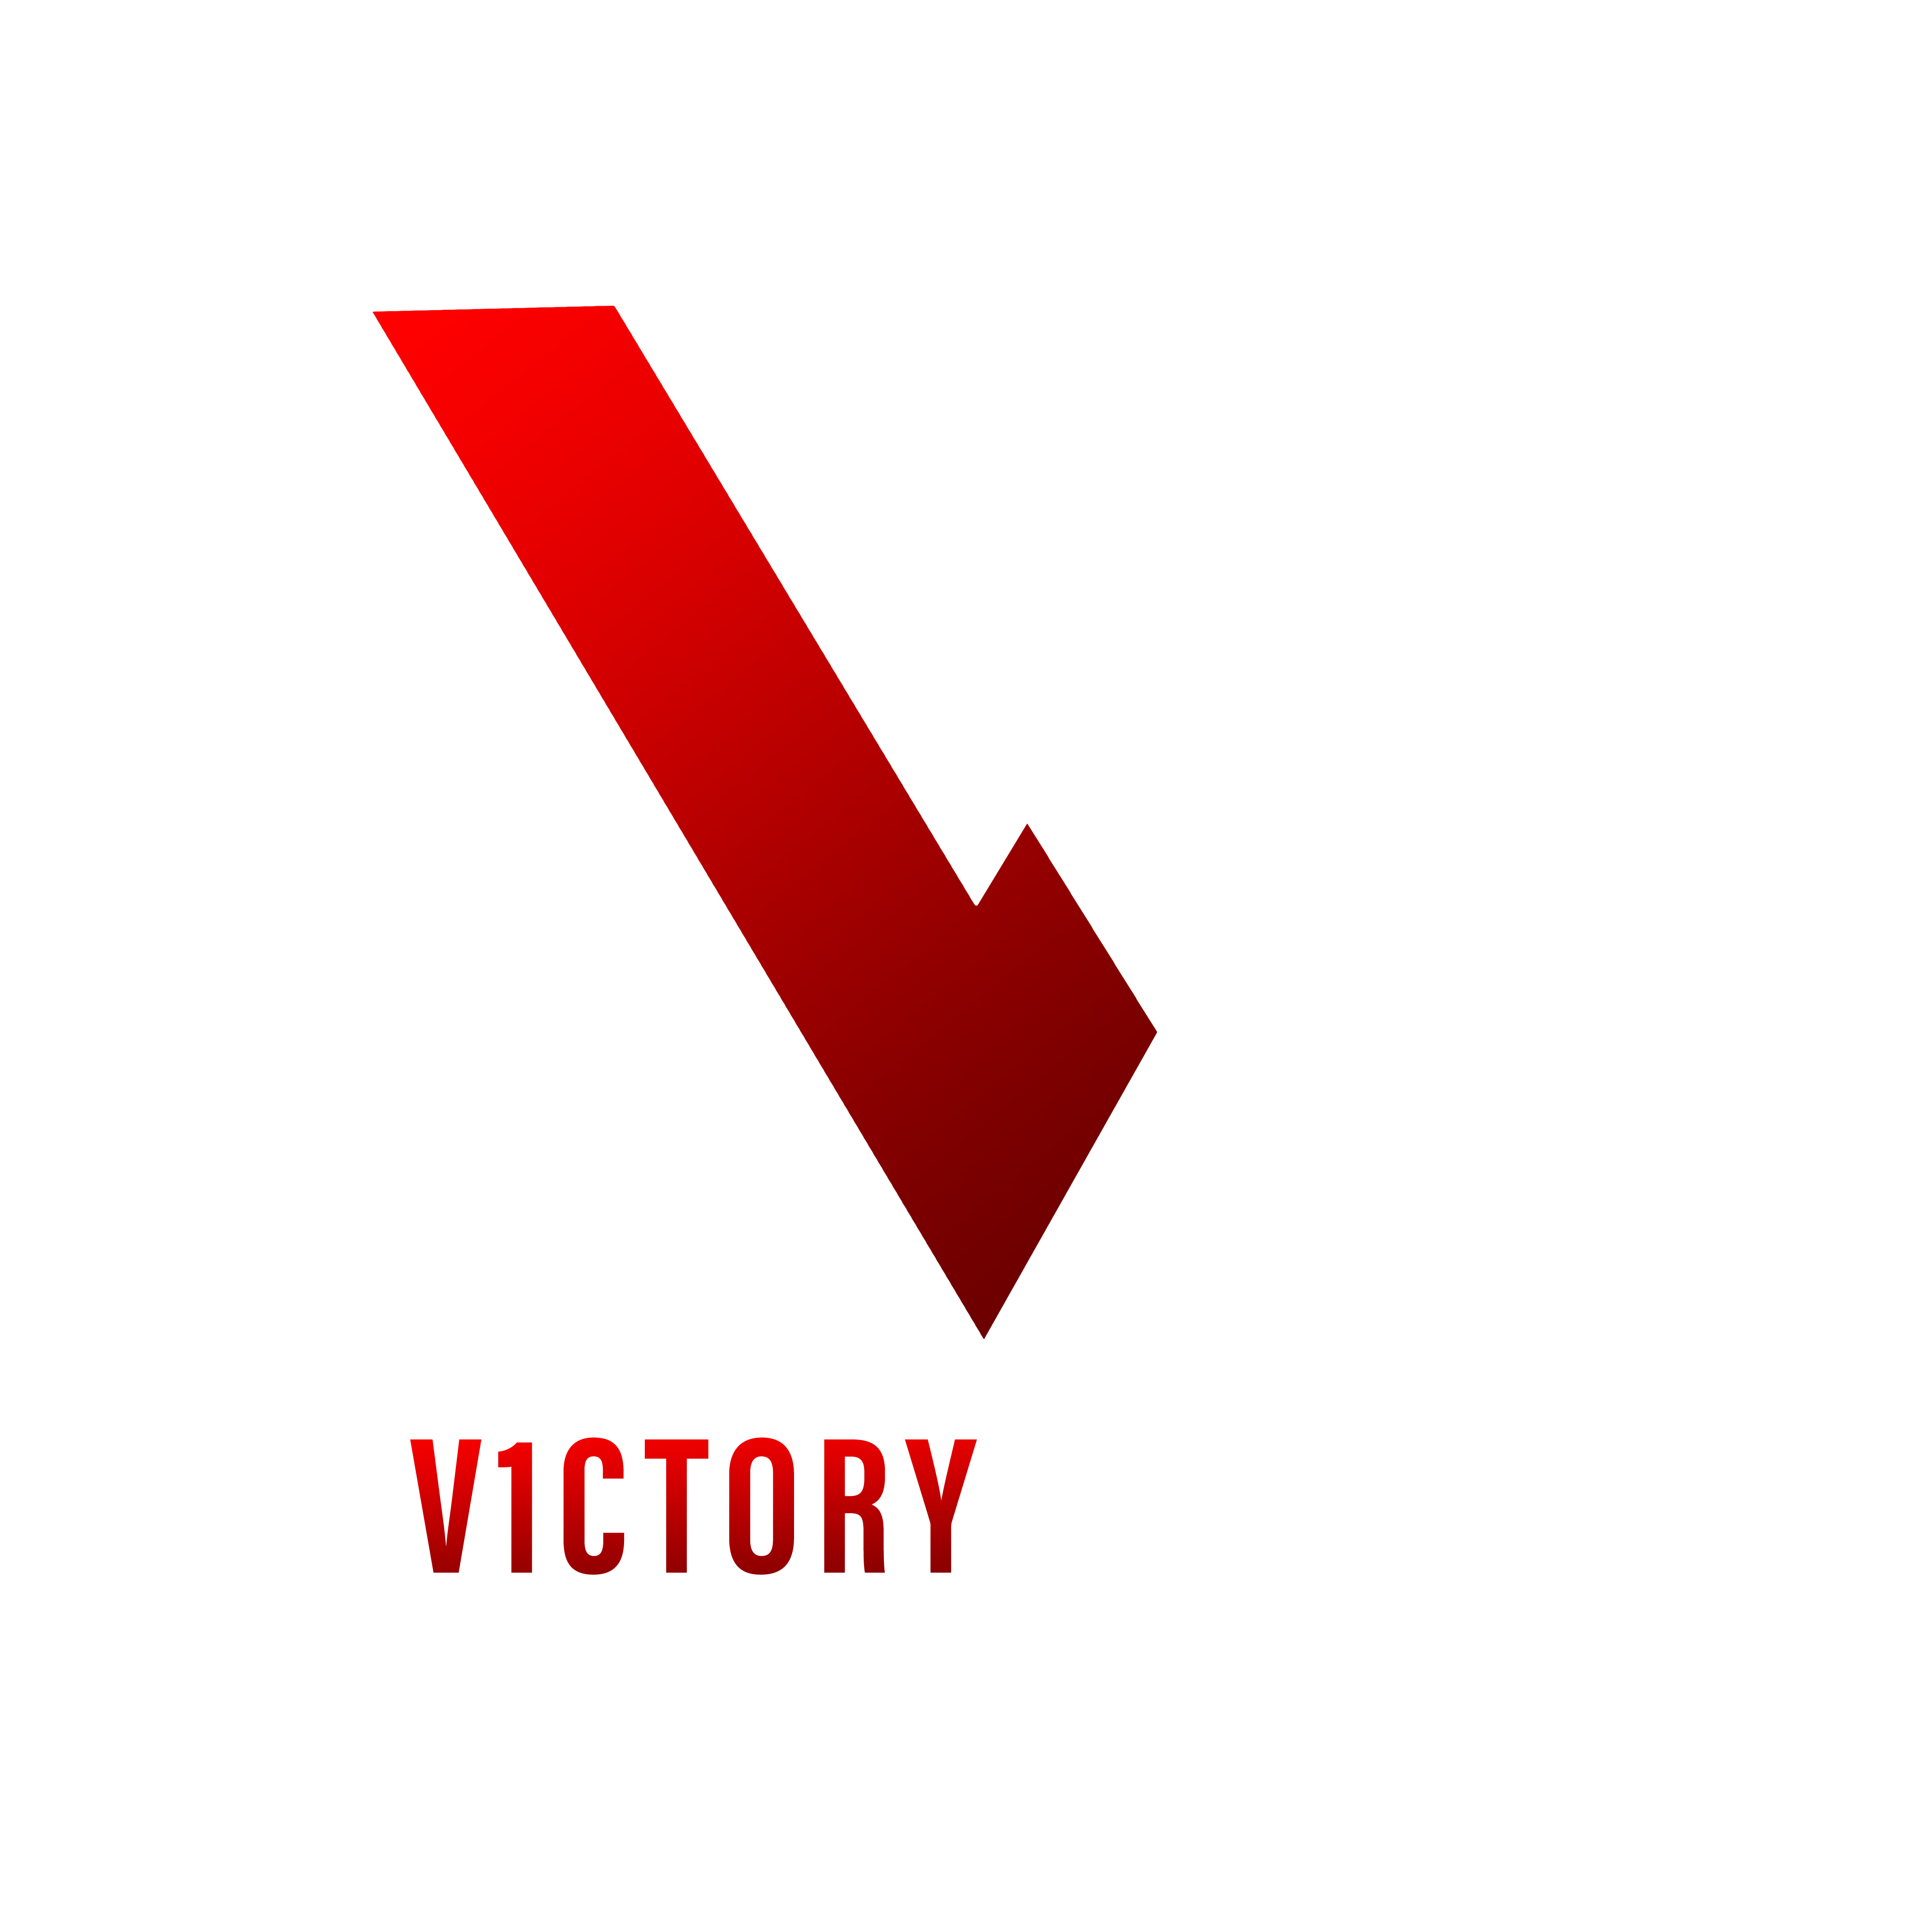 V1CTORY Esports